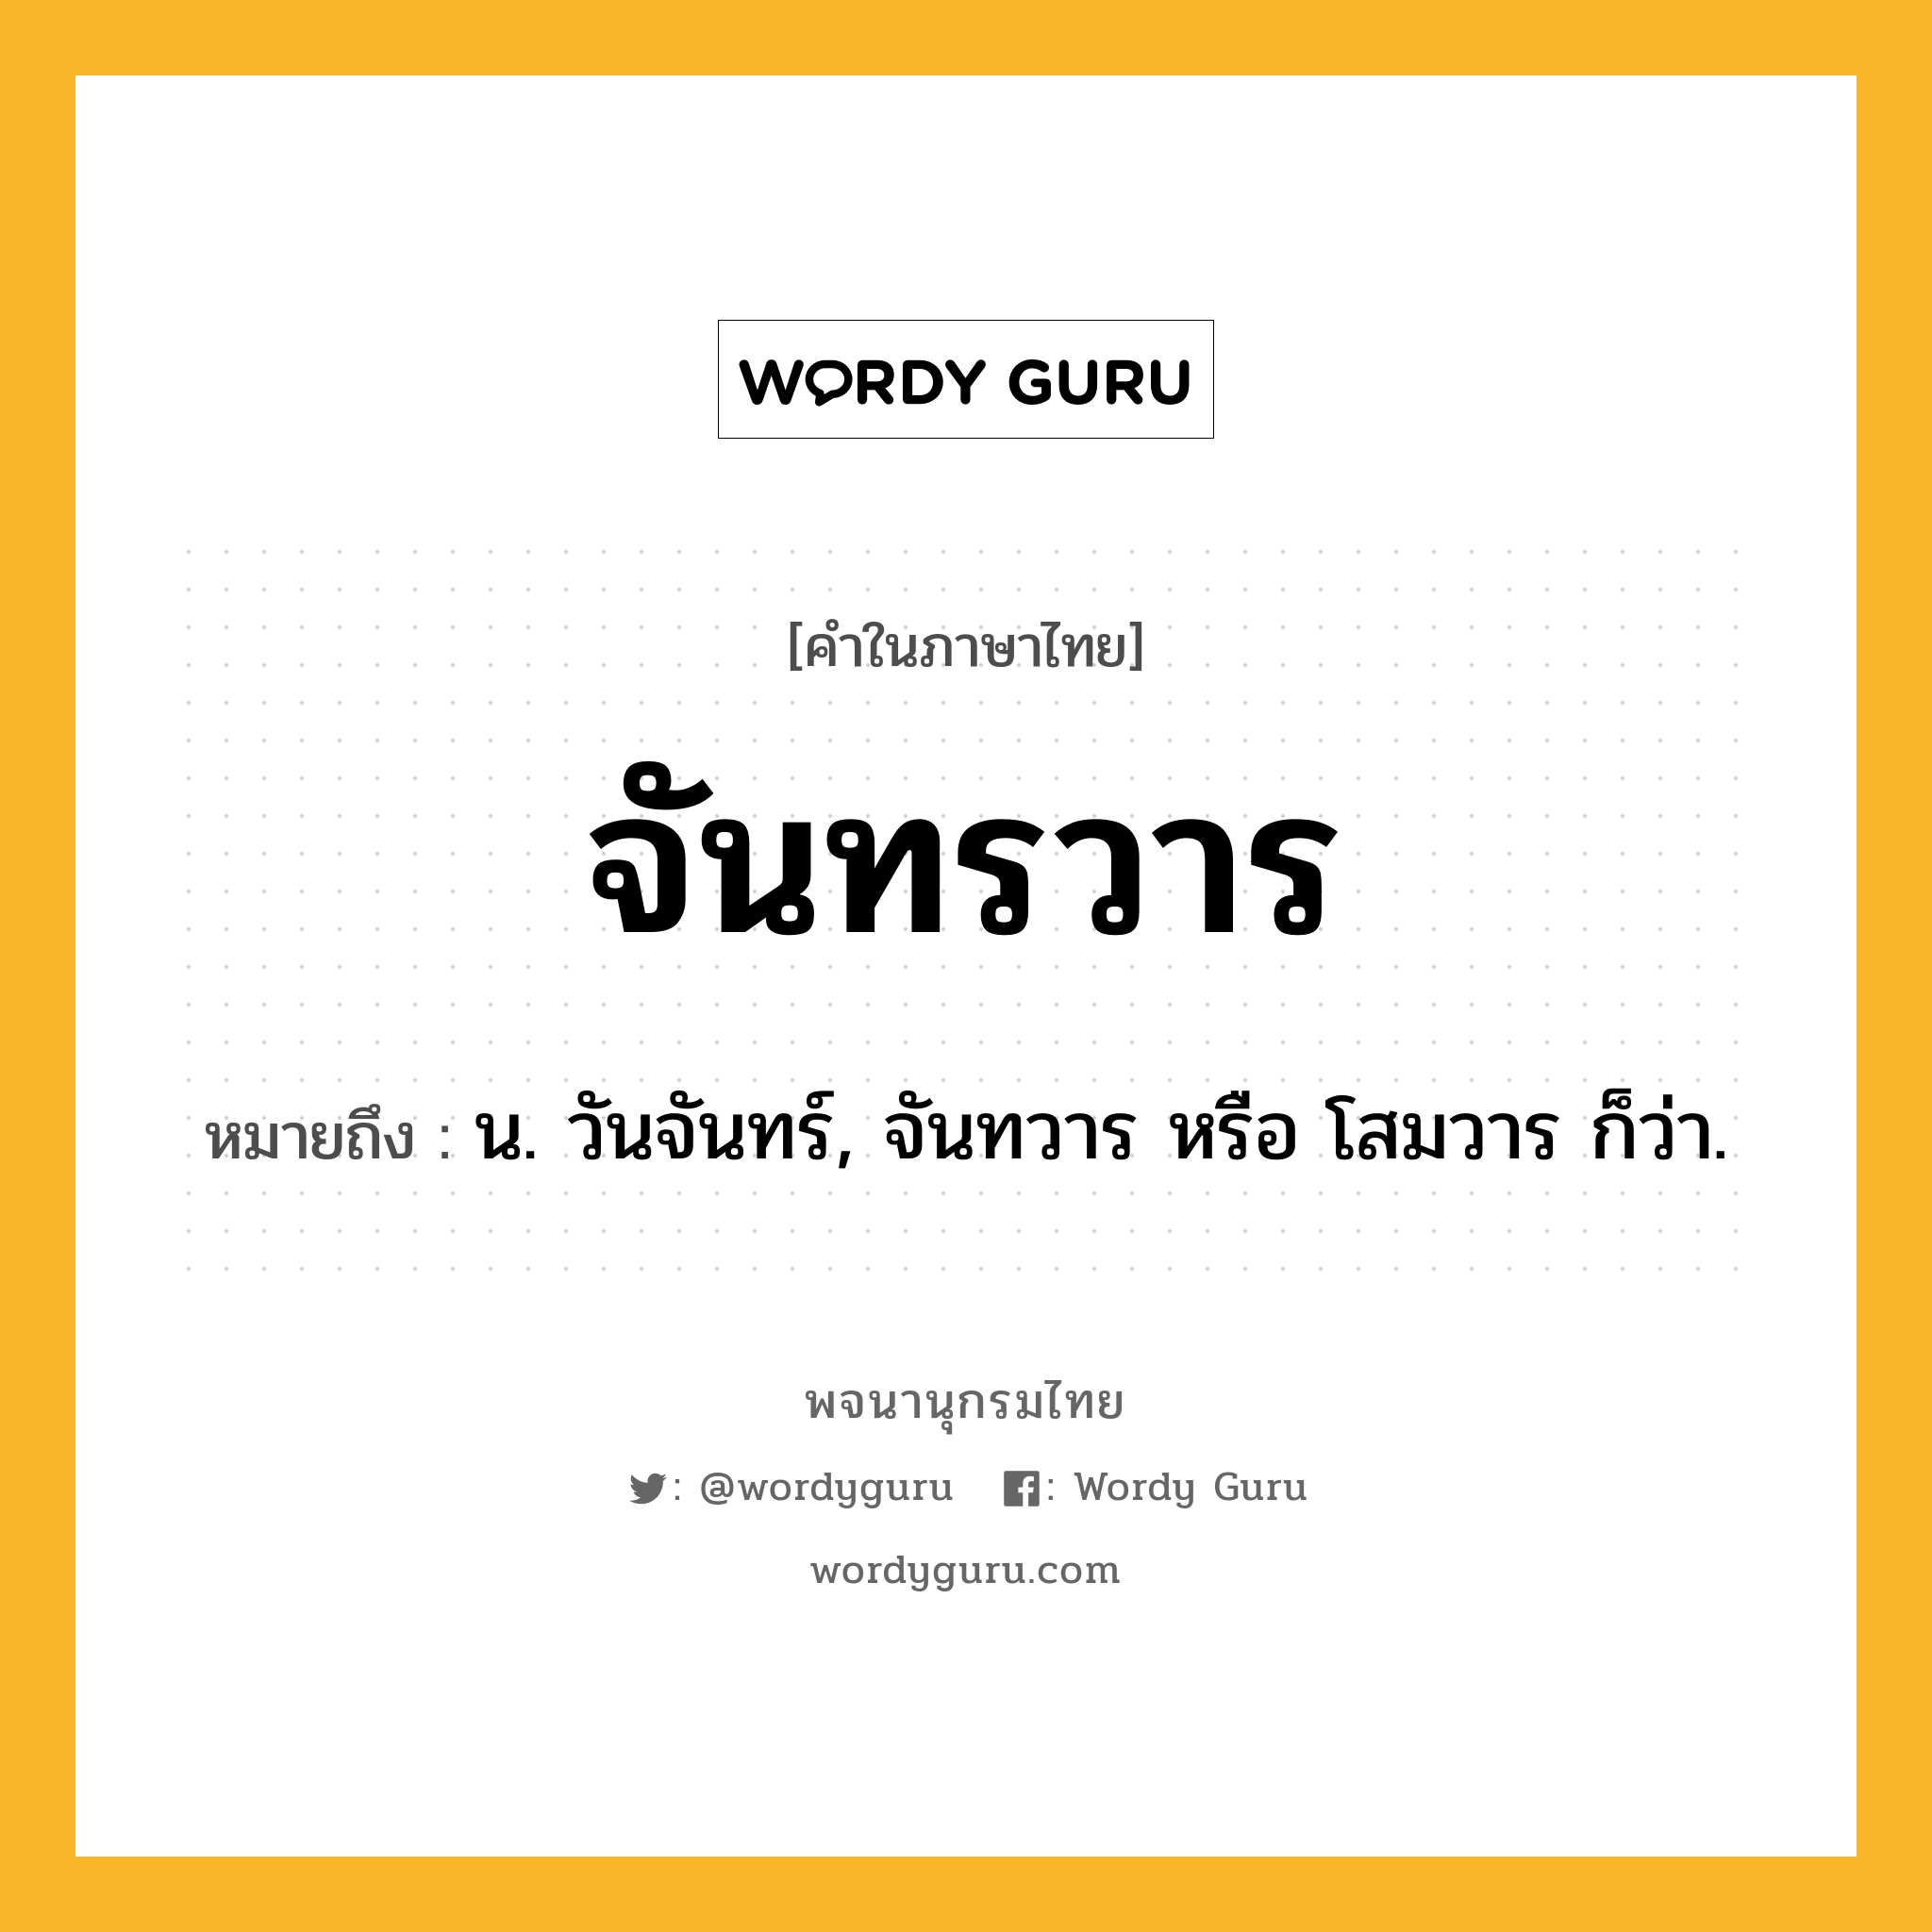 จันทรวาร หมายถึงอะไร?, คำในภาษาไทย จันทรวาร หมายถึง น. วันจันทร์, จันทวาร หรือ โสมวาร ก็ว่า.